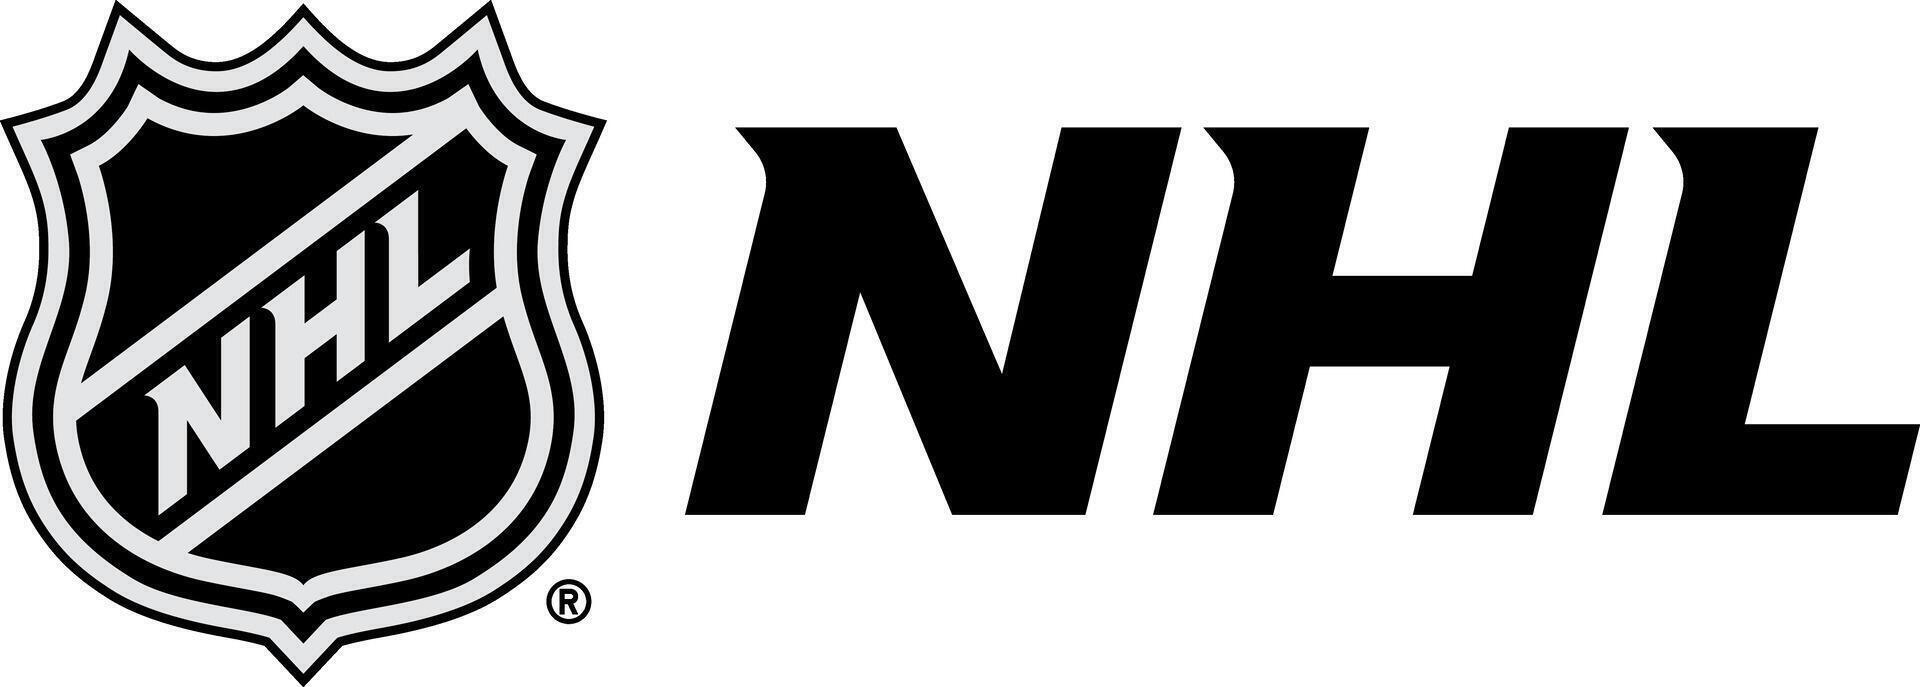 el nacional hockey liga logo con el inscripción vector